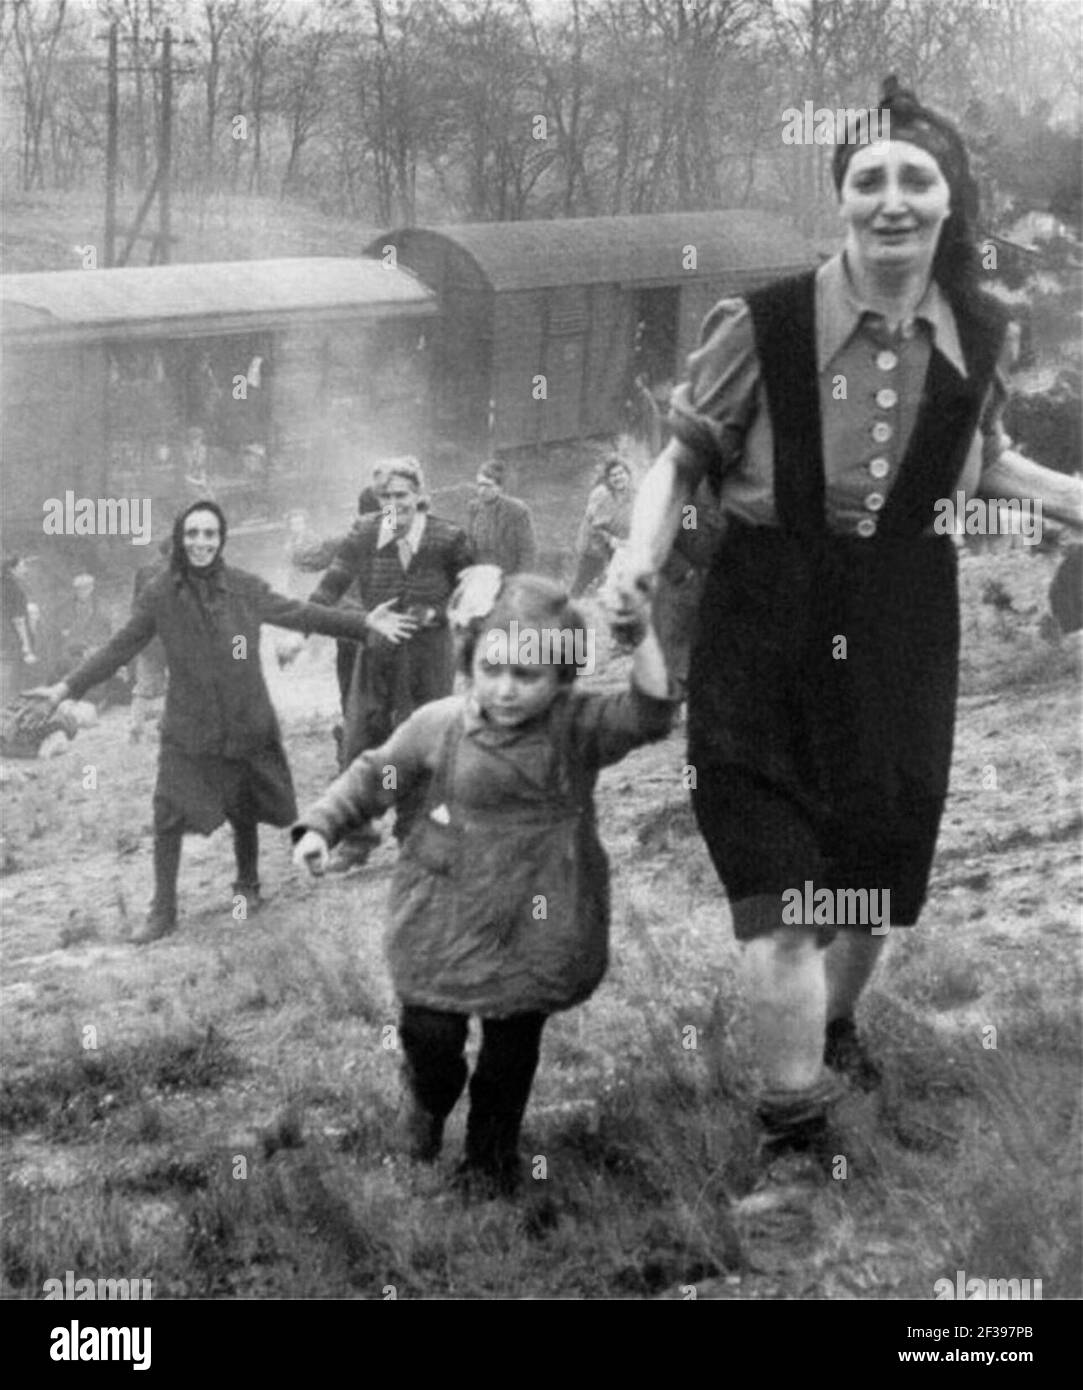 Les prisonniers sont expédiés vers l'est par train depuis le camp de concentration de Bergen-Belsen, libéré par les membres du 743e Bataillon de chars près de Farsleben, Allemagne, le 13 avril 1945. Banque D'Images